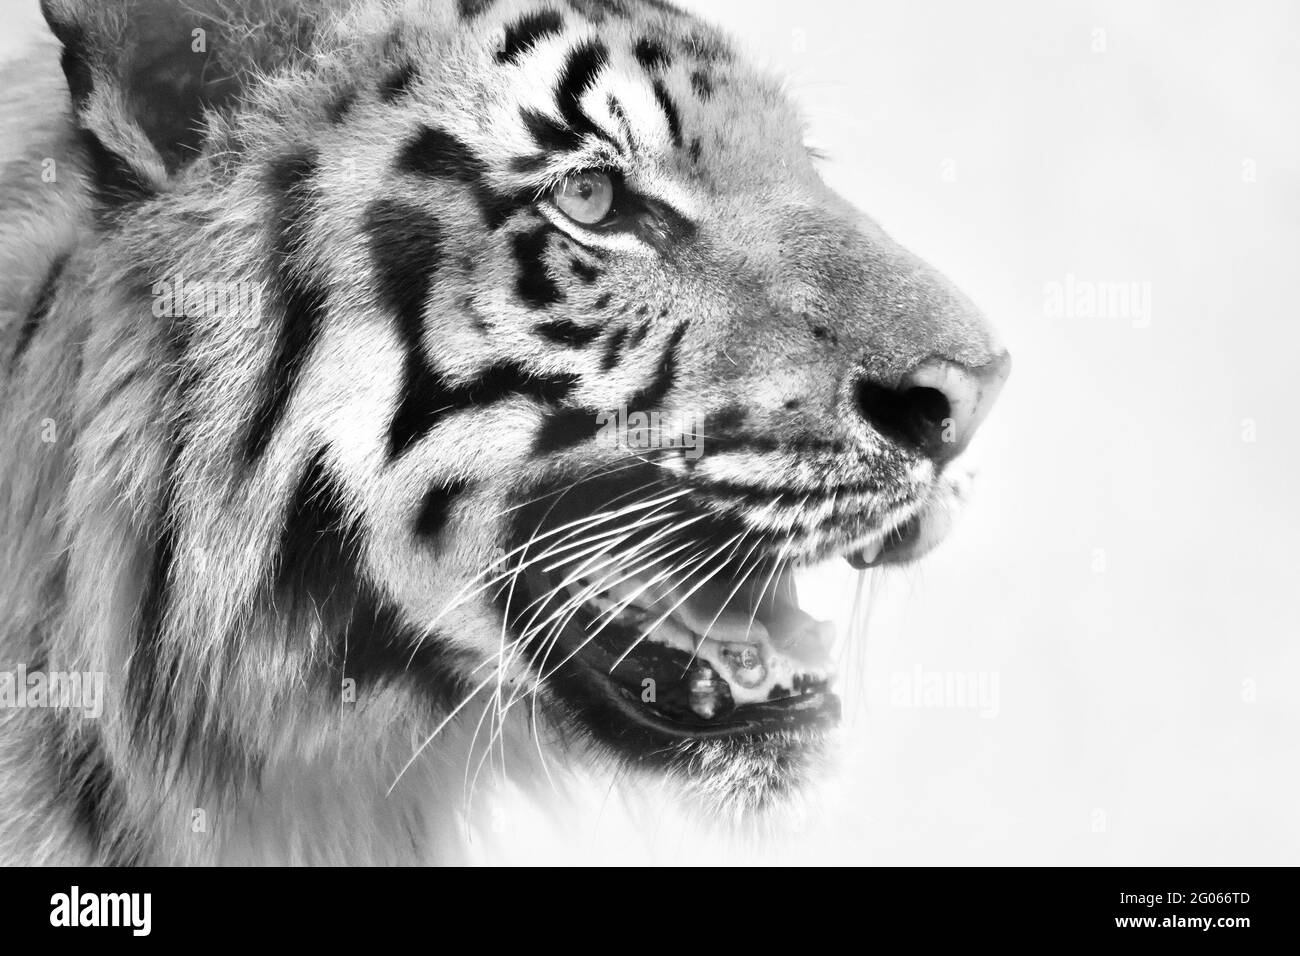 Schönes, wütendes Gesicht des Königlich-Bengalen Tigers, Panthera Tigris, Westbengalen, Indien. Es ist die größte Katzenart und gefährdete, Sundarban Mangrovenwald. Stockfoto